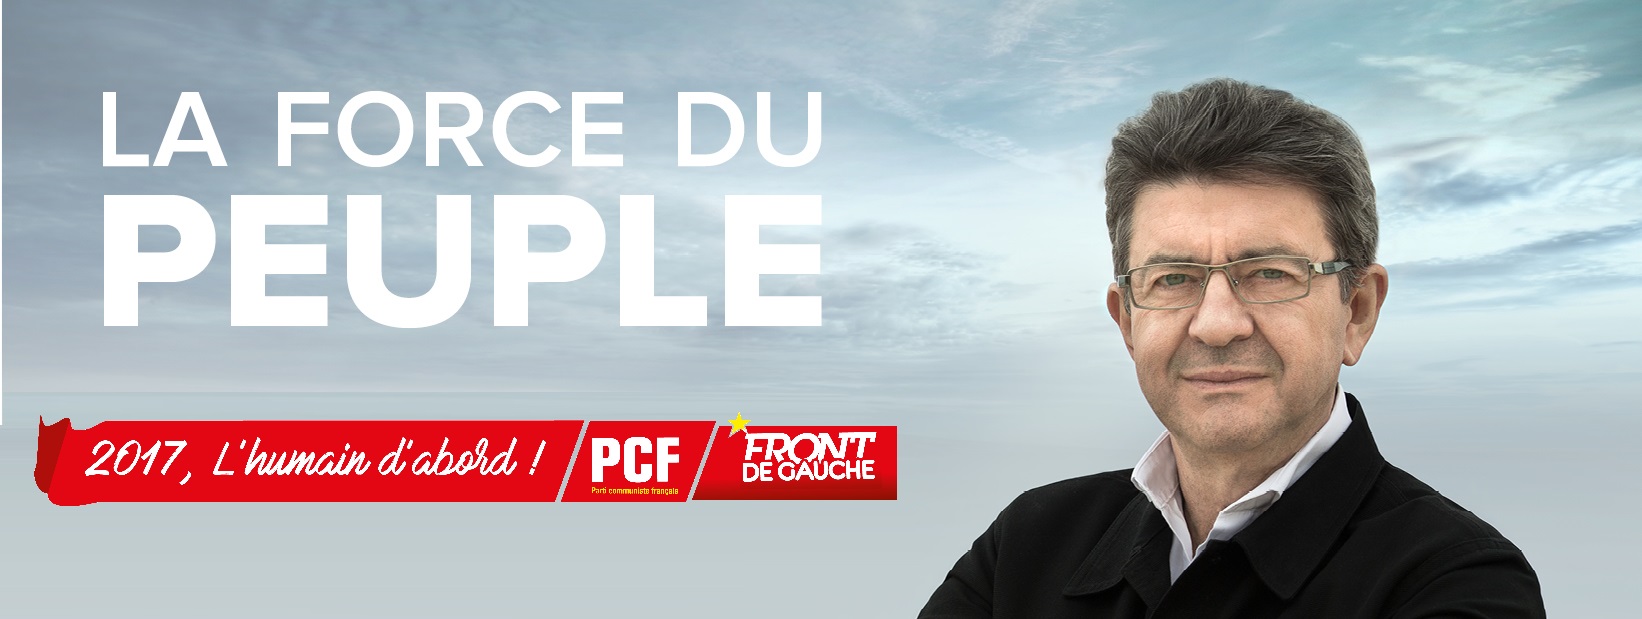 "La Force du peuple à l'Assemblée nationale", Pierre Laurent (PCF) propose une bannière commune à Jean-Luc Mélenchon